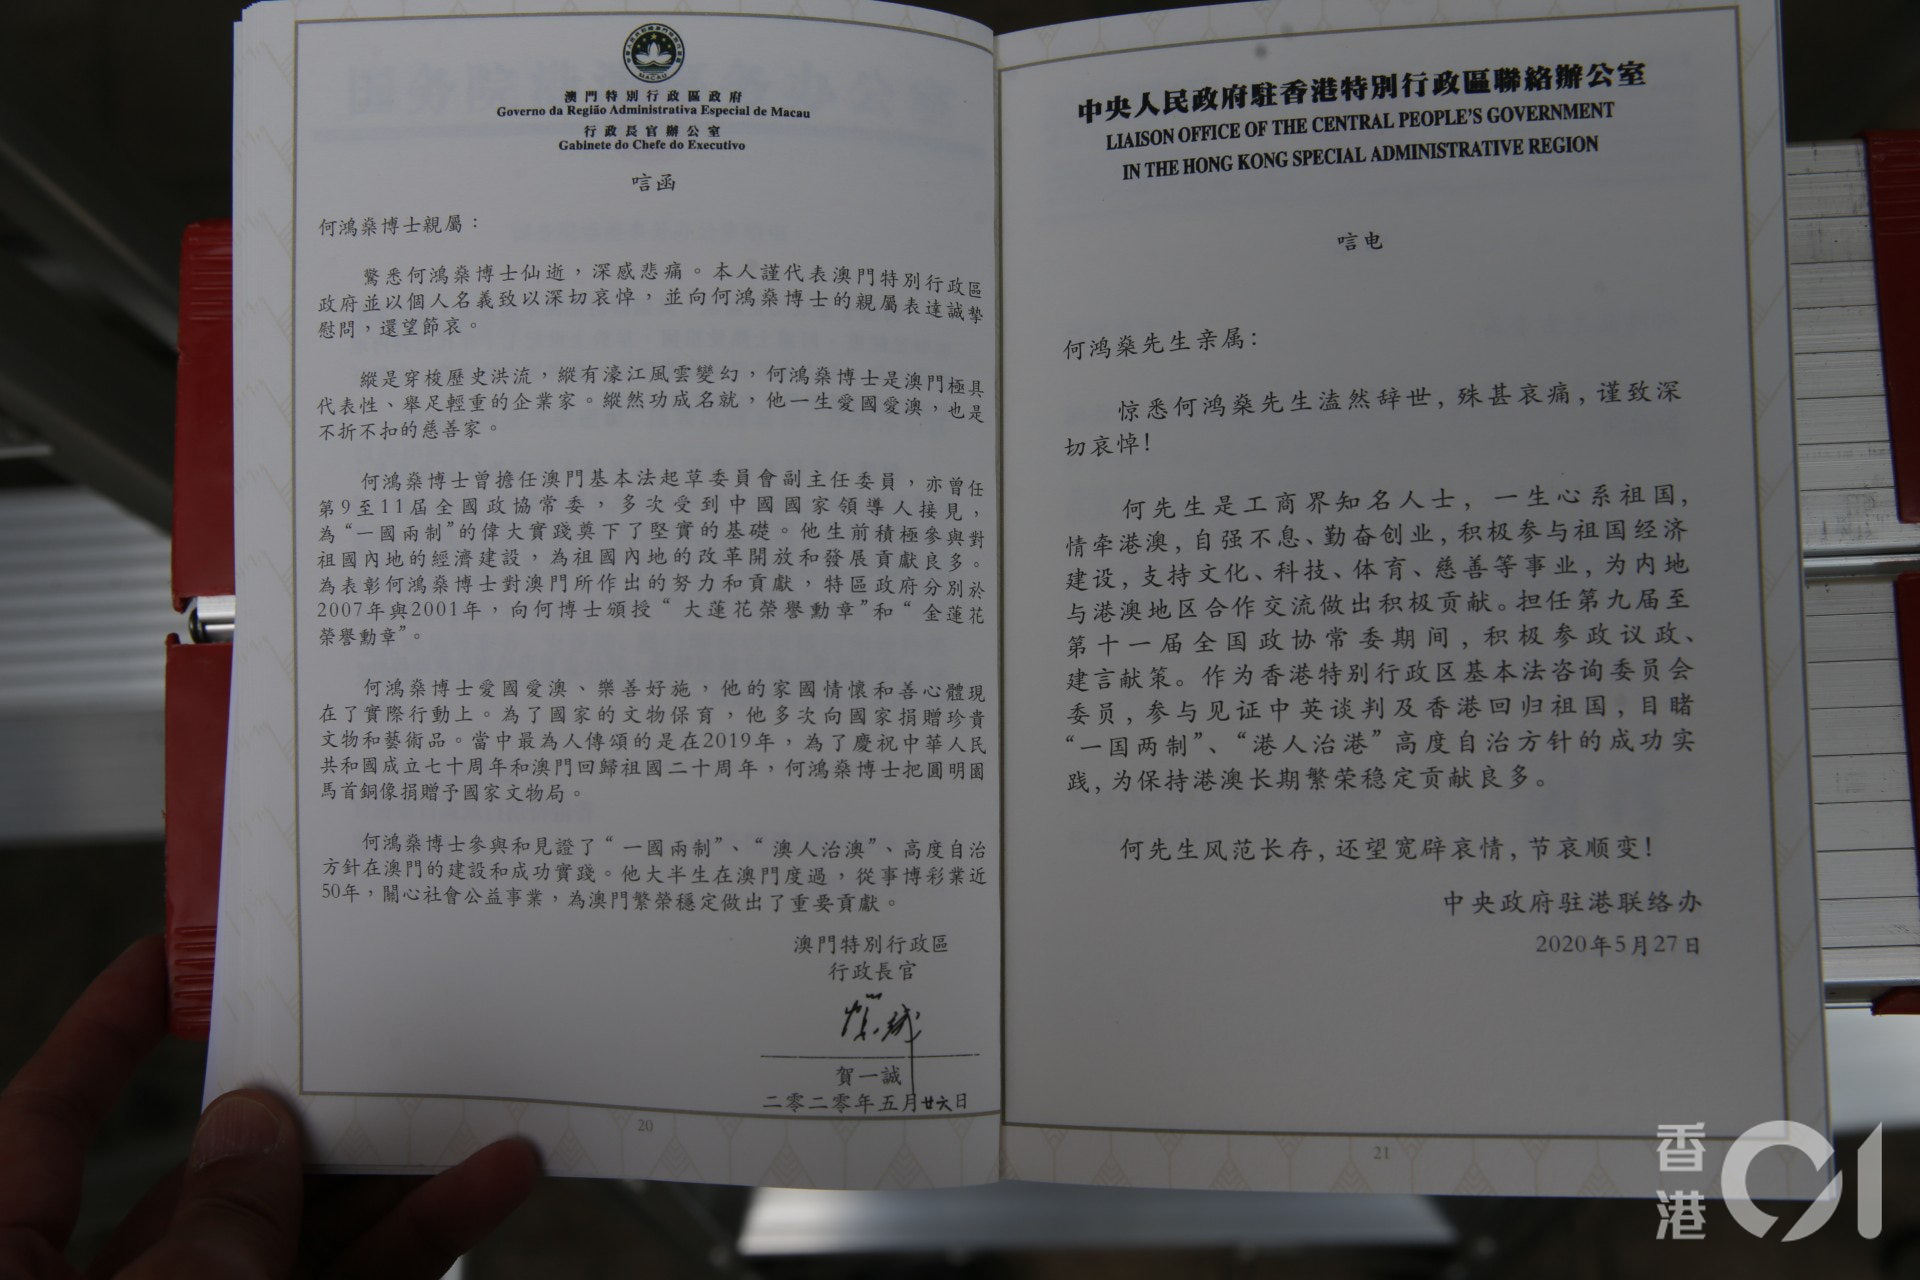 Hé lộ toàn bộ nội dung trong quyển sổ lưu niệm của Vua sòng bài Macau được gửi cho những người đến viếng tang lễ - Ảnh 5.